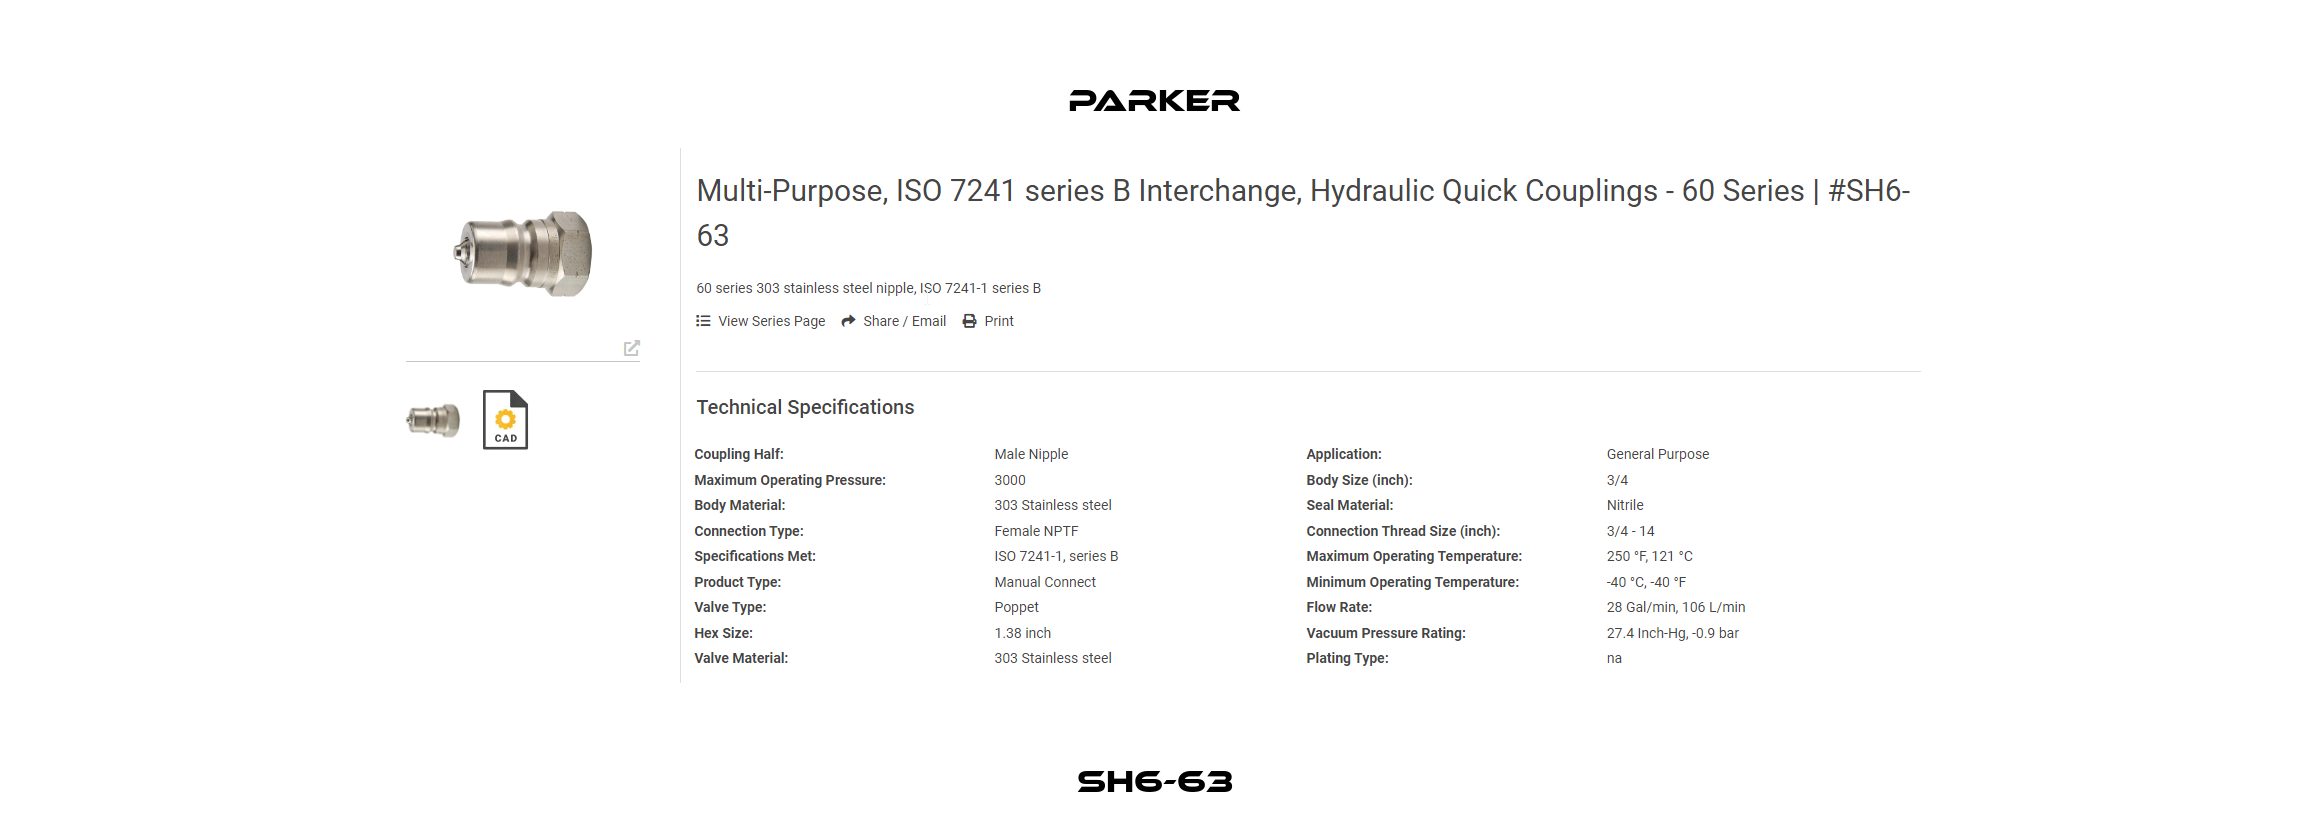 SH6-63 Parker